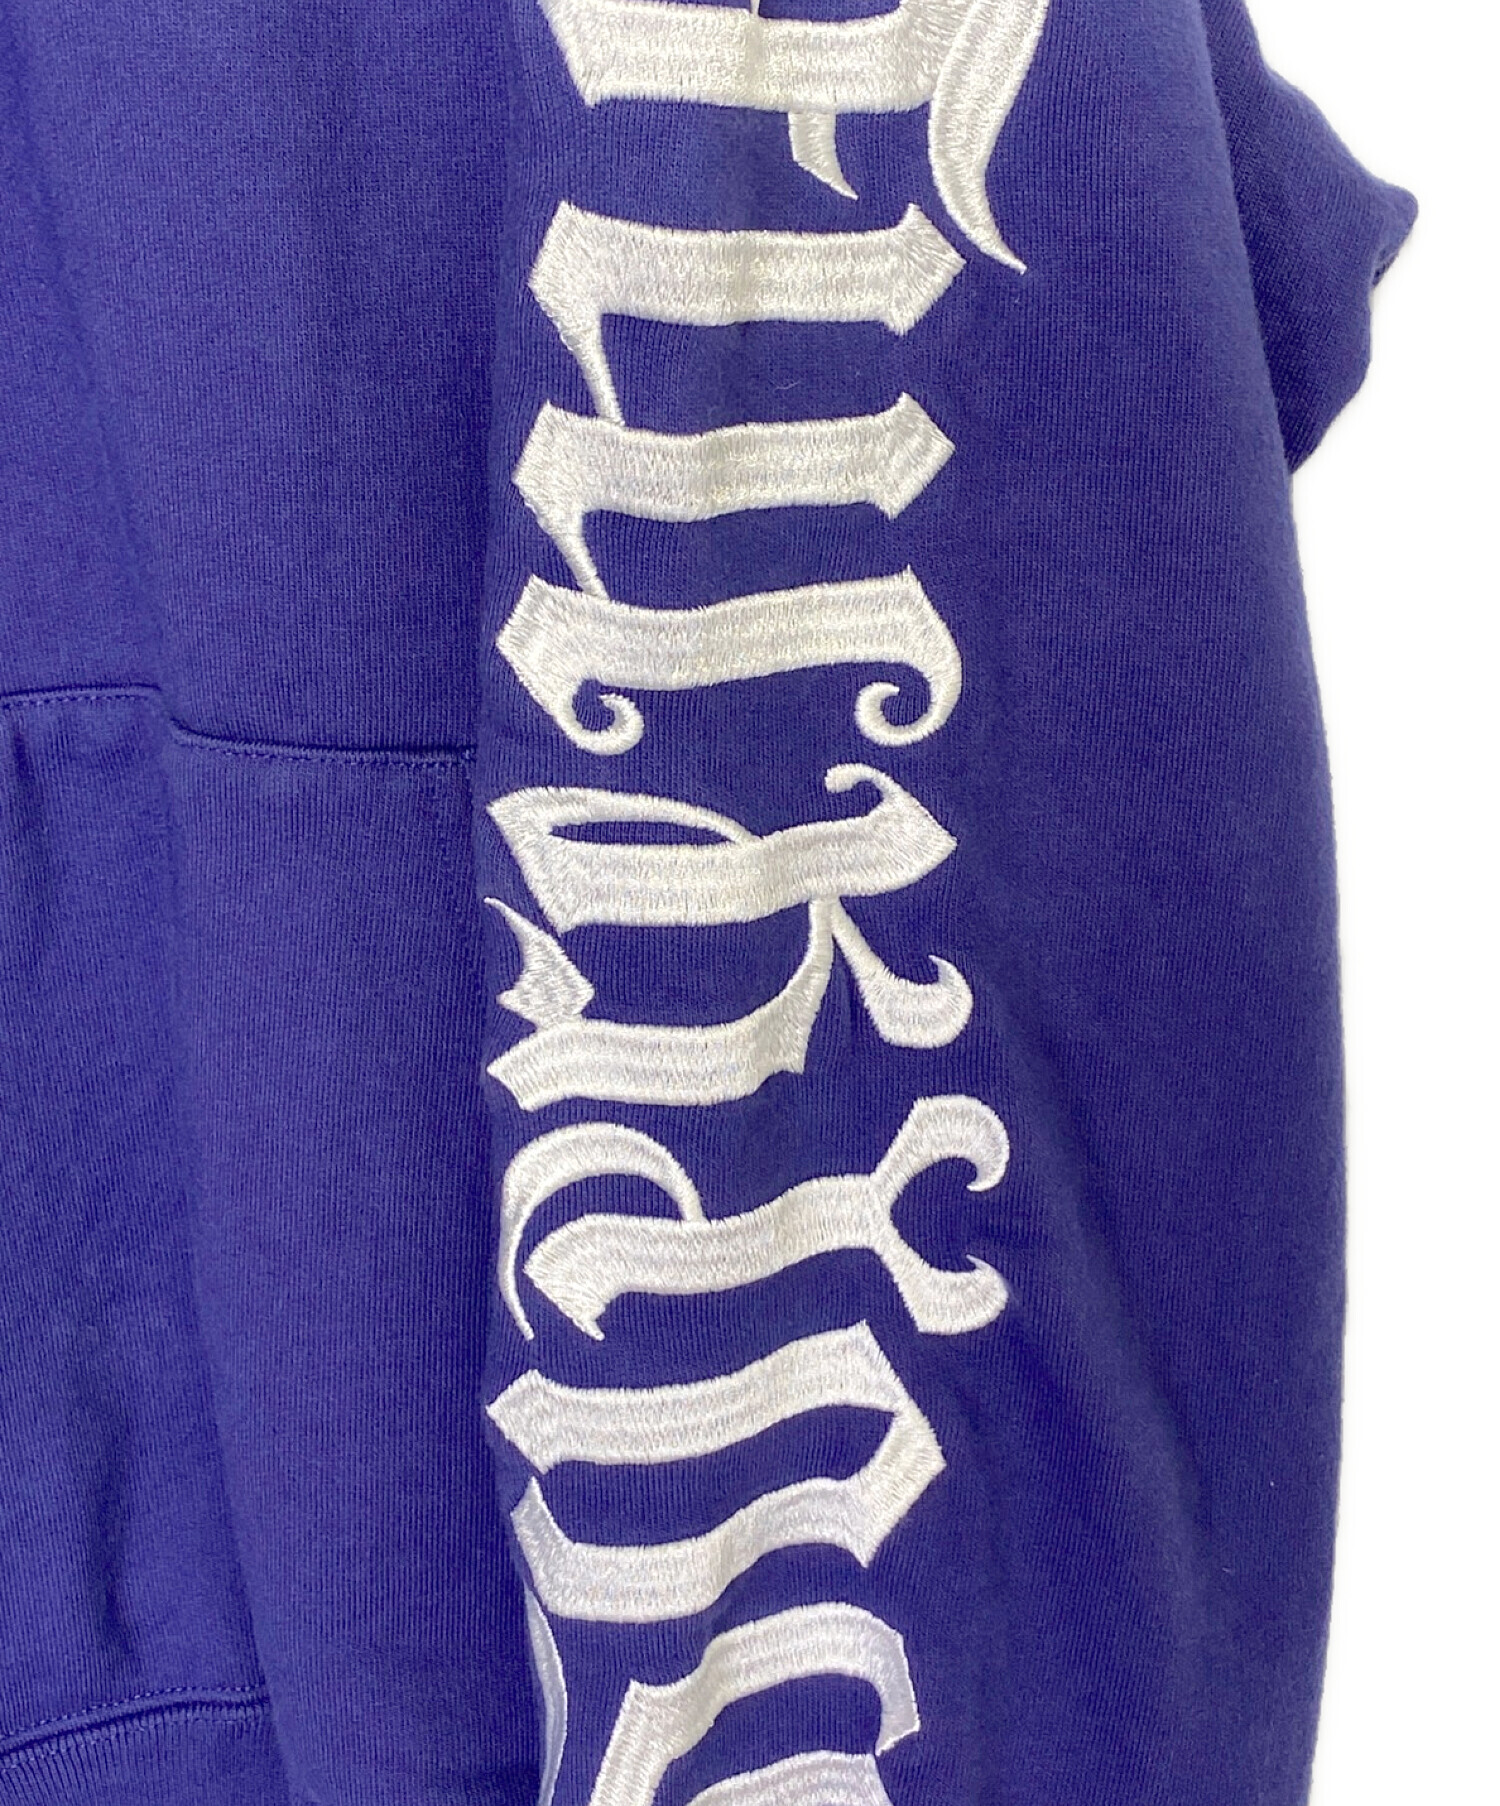 SUPREME (シュプリーム) Ambigram Hooded Sweatshirt パープル サイズ:L